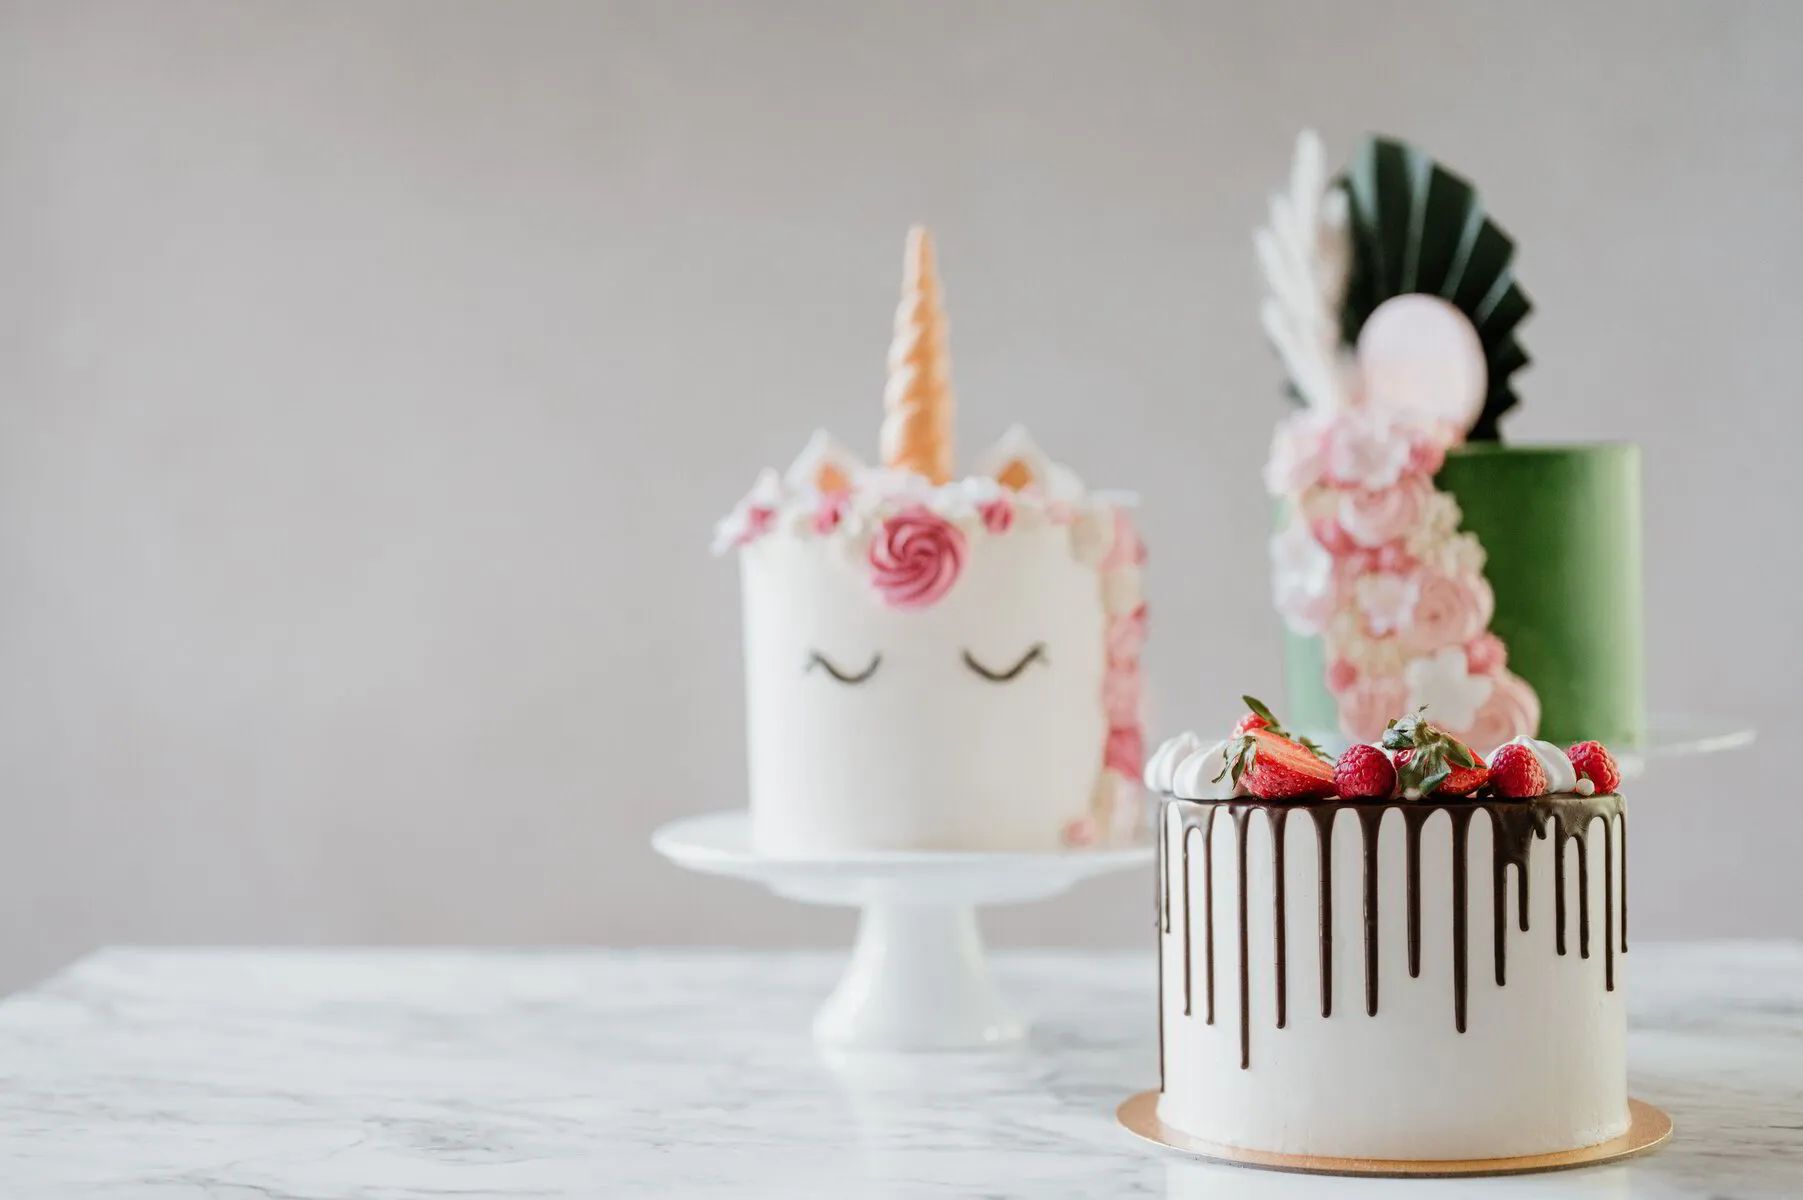 Designa din drömtårta - från planering till färdig tårta